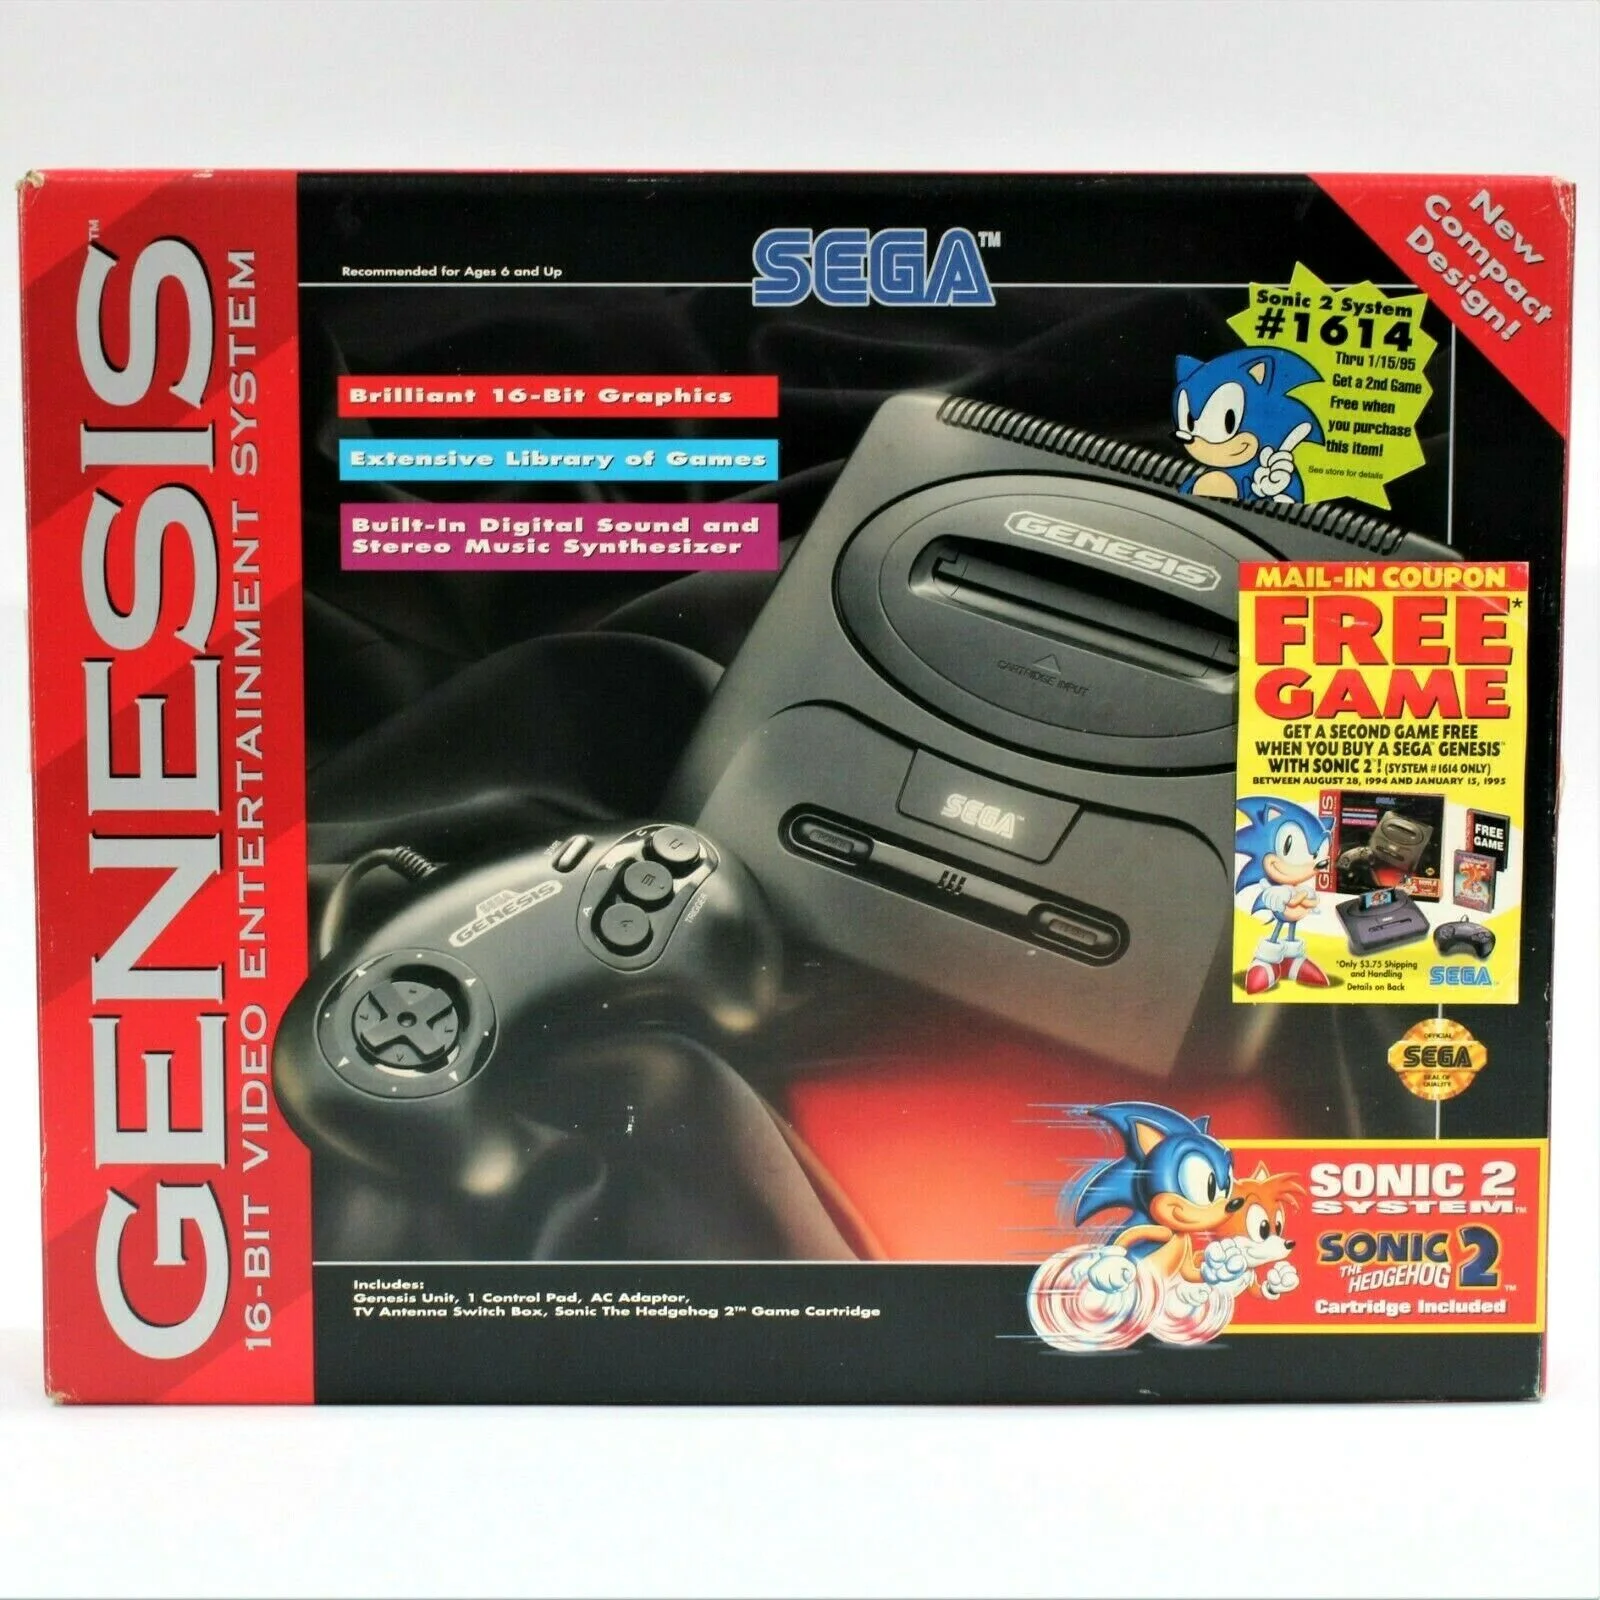 Les packs Sega Megadrive US et Pal- Qu'est ce qu'un pack complet ?  Sega-genesis-model-2-sonic-2-system-coupon-bundle-1599784486-18